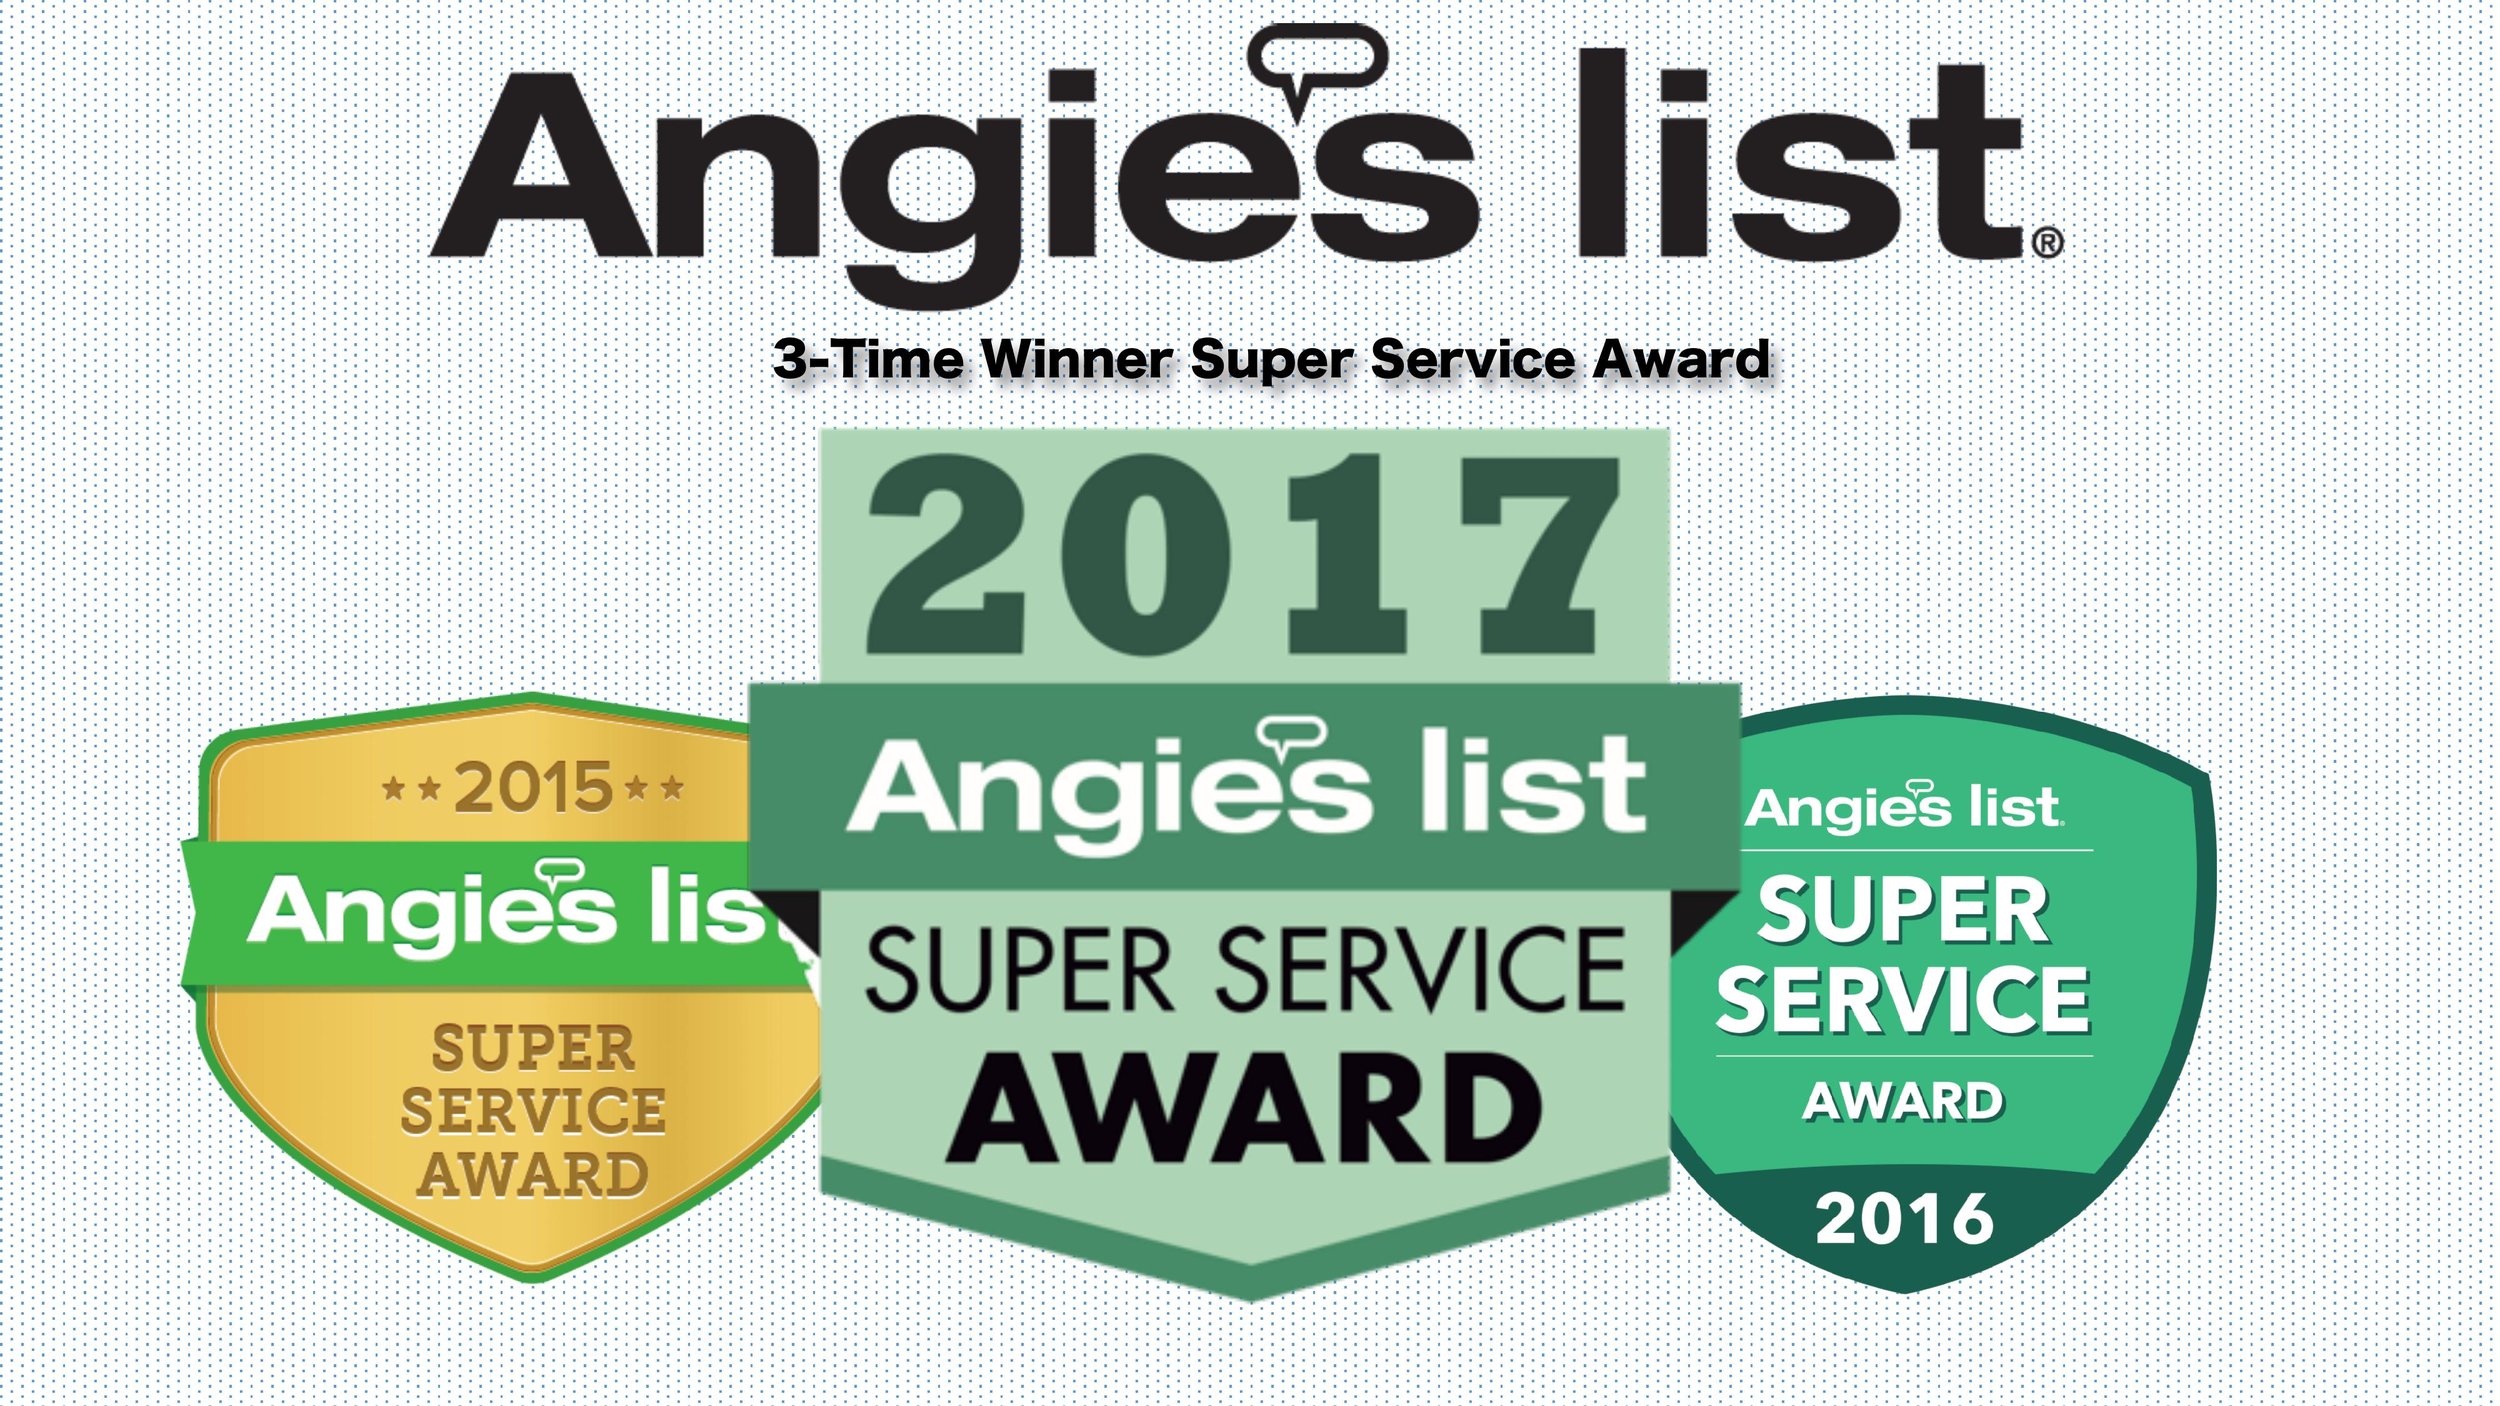 3X Angie’s List Super Service Award Winner